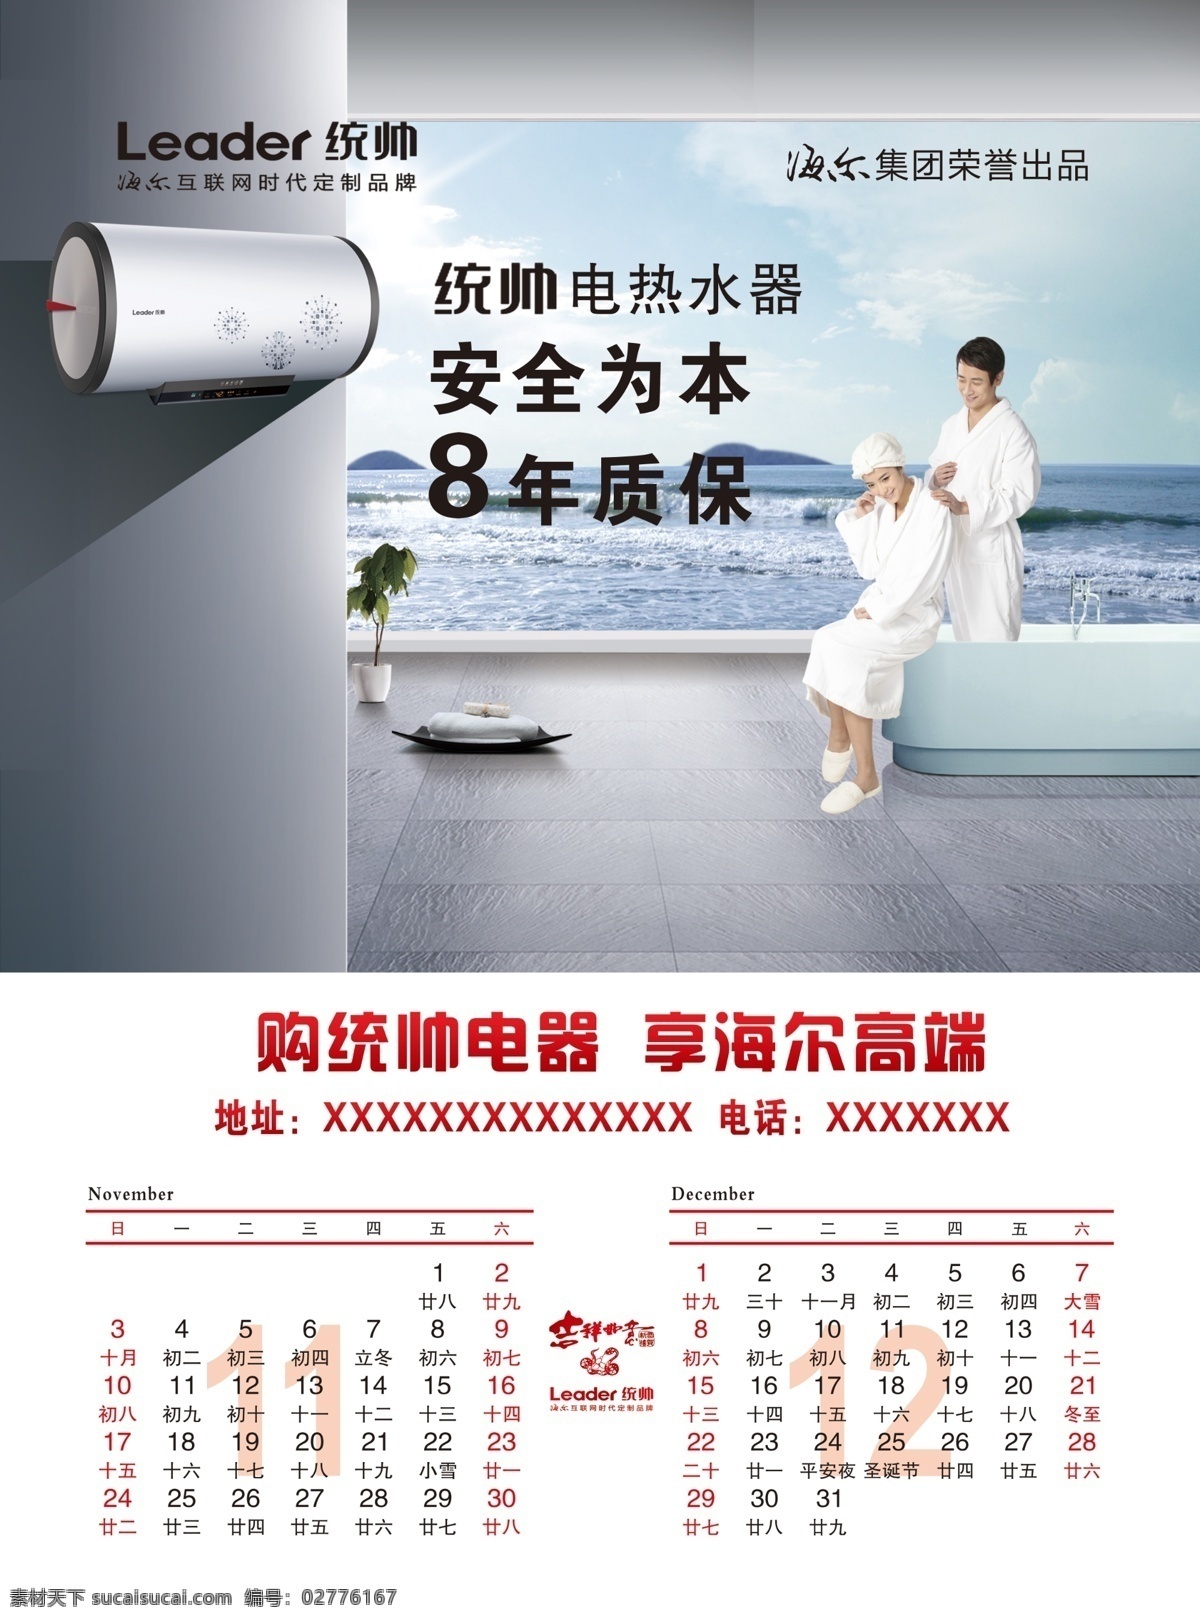 2013 年 海尔 统帅 广告 最新 挂历 浴池 电热水器 室内效果图 男女 家用电器 国内广告设计 广告设计模板 源文件